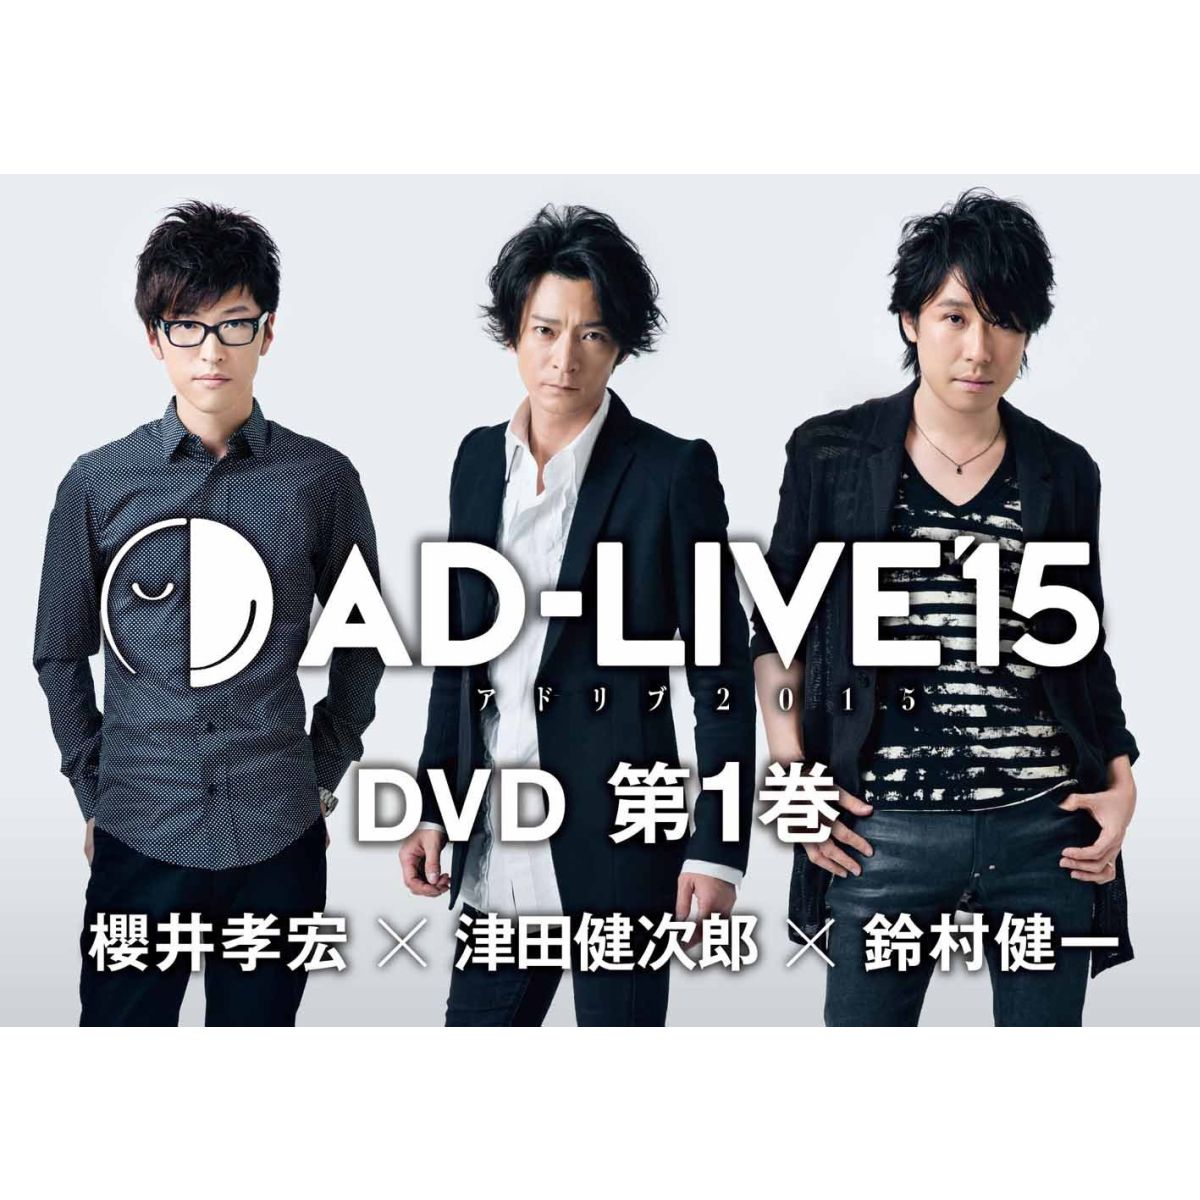 「AD-LIVE 2015」第1巻(櫻井孝宏×津田健次郎×鈴村健一)